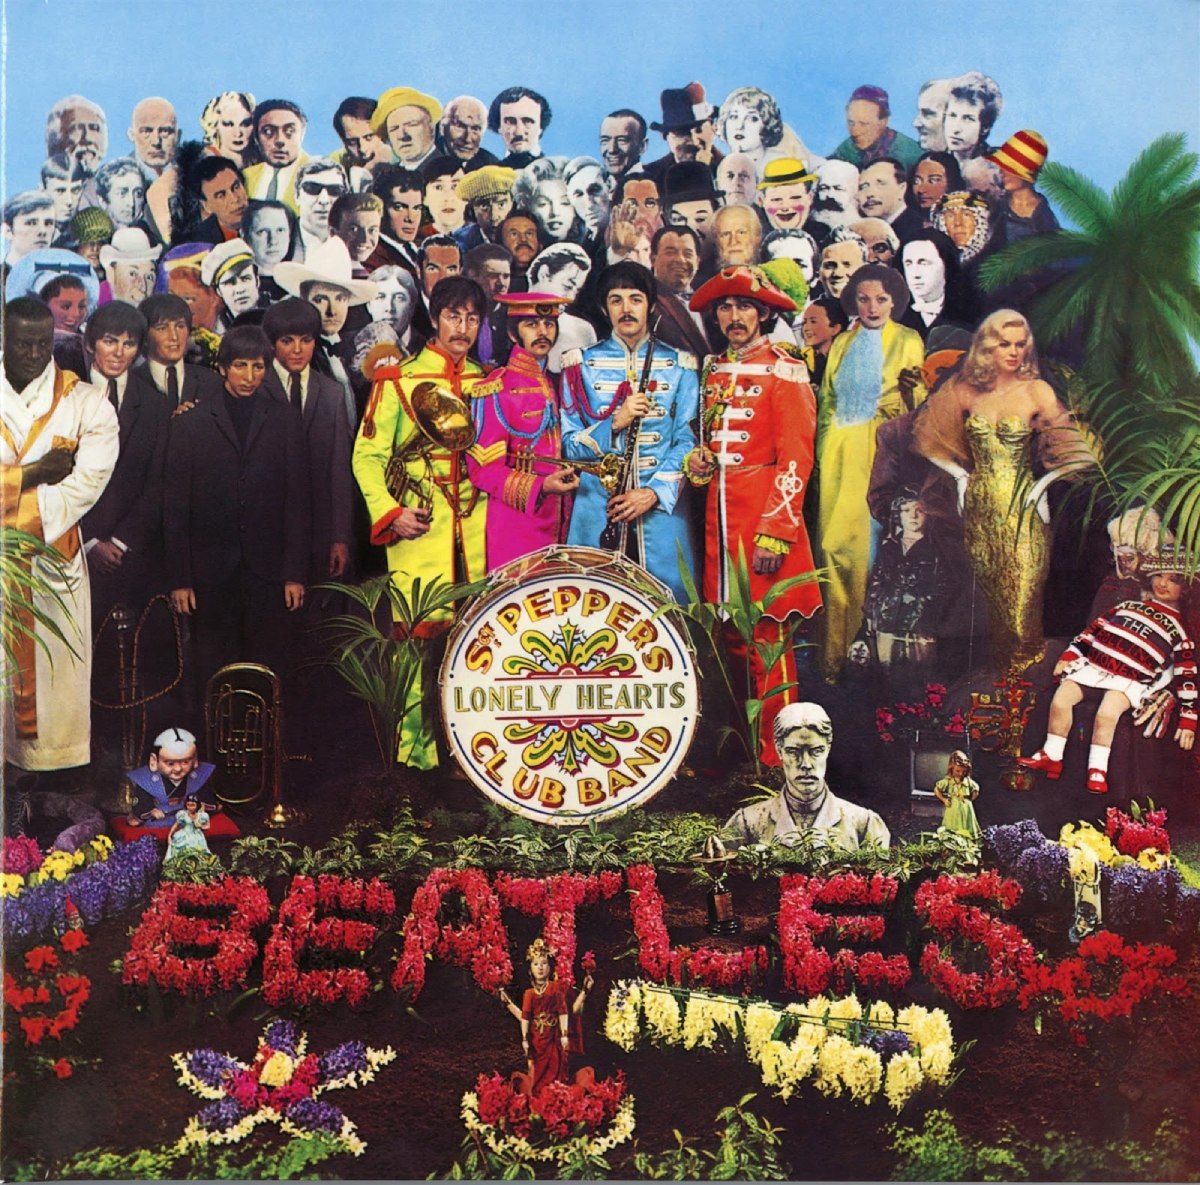 Couverture de "Sgt. Pepper's Lonely Hearts Club Band" par les Beatles.